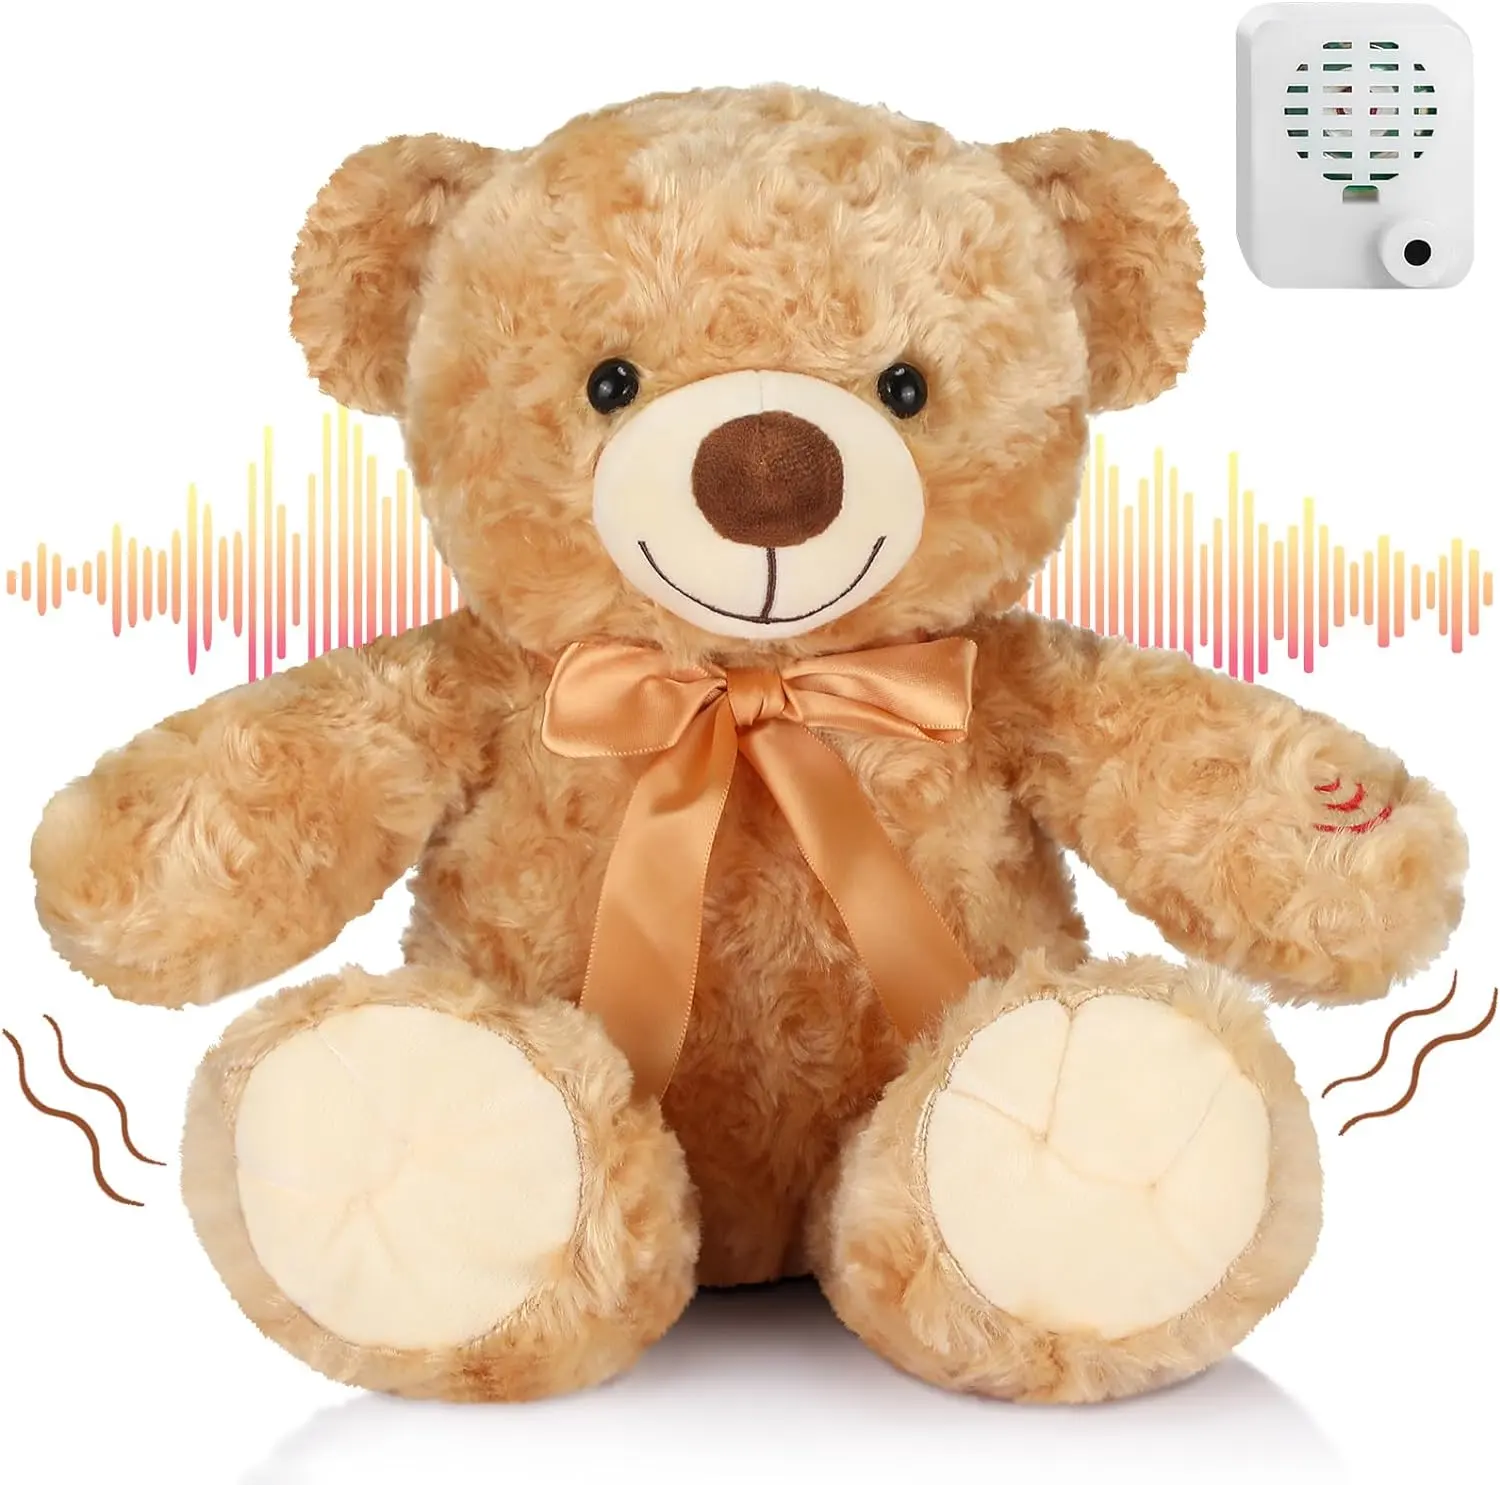 نموذج دمية الدب اللطيف المتحدث الذي يُخرج من المصنع، وحدة تسجيل الصوت في 90 ثانية للحمليات المحشوة